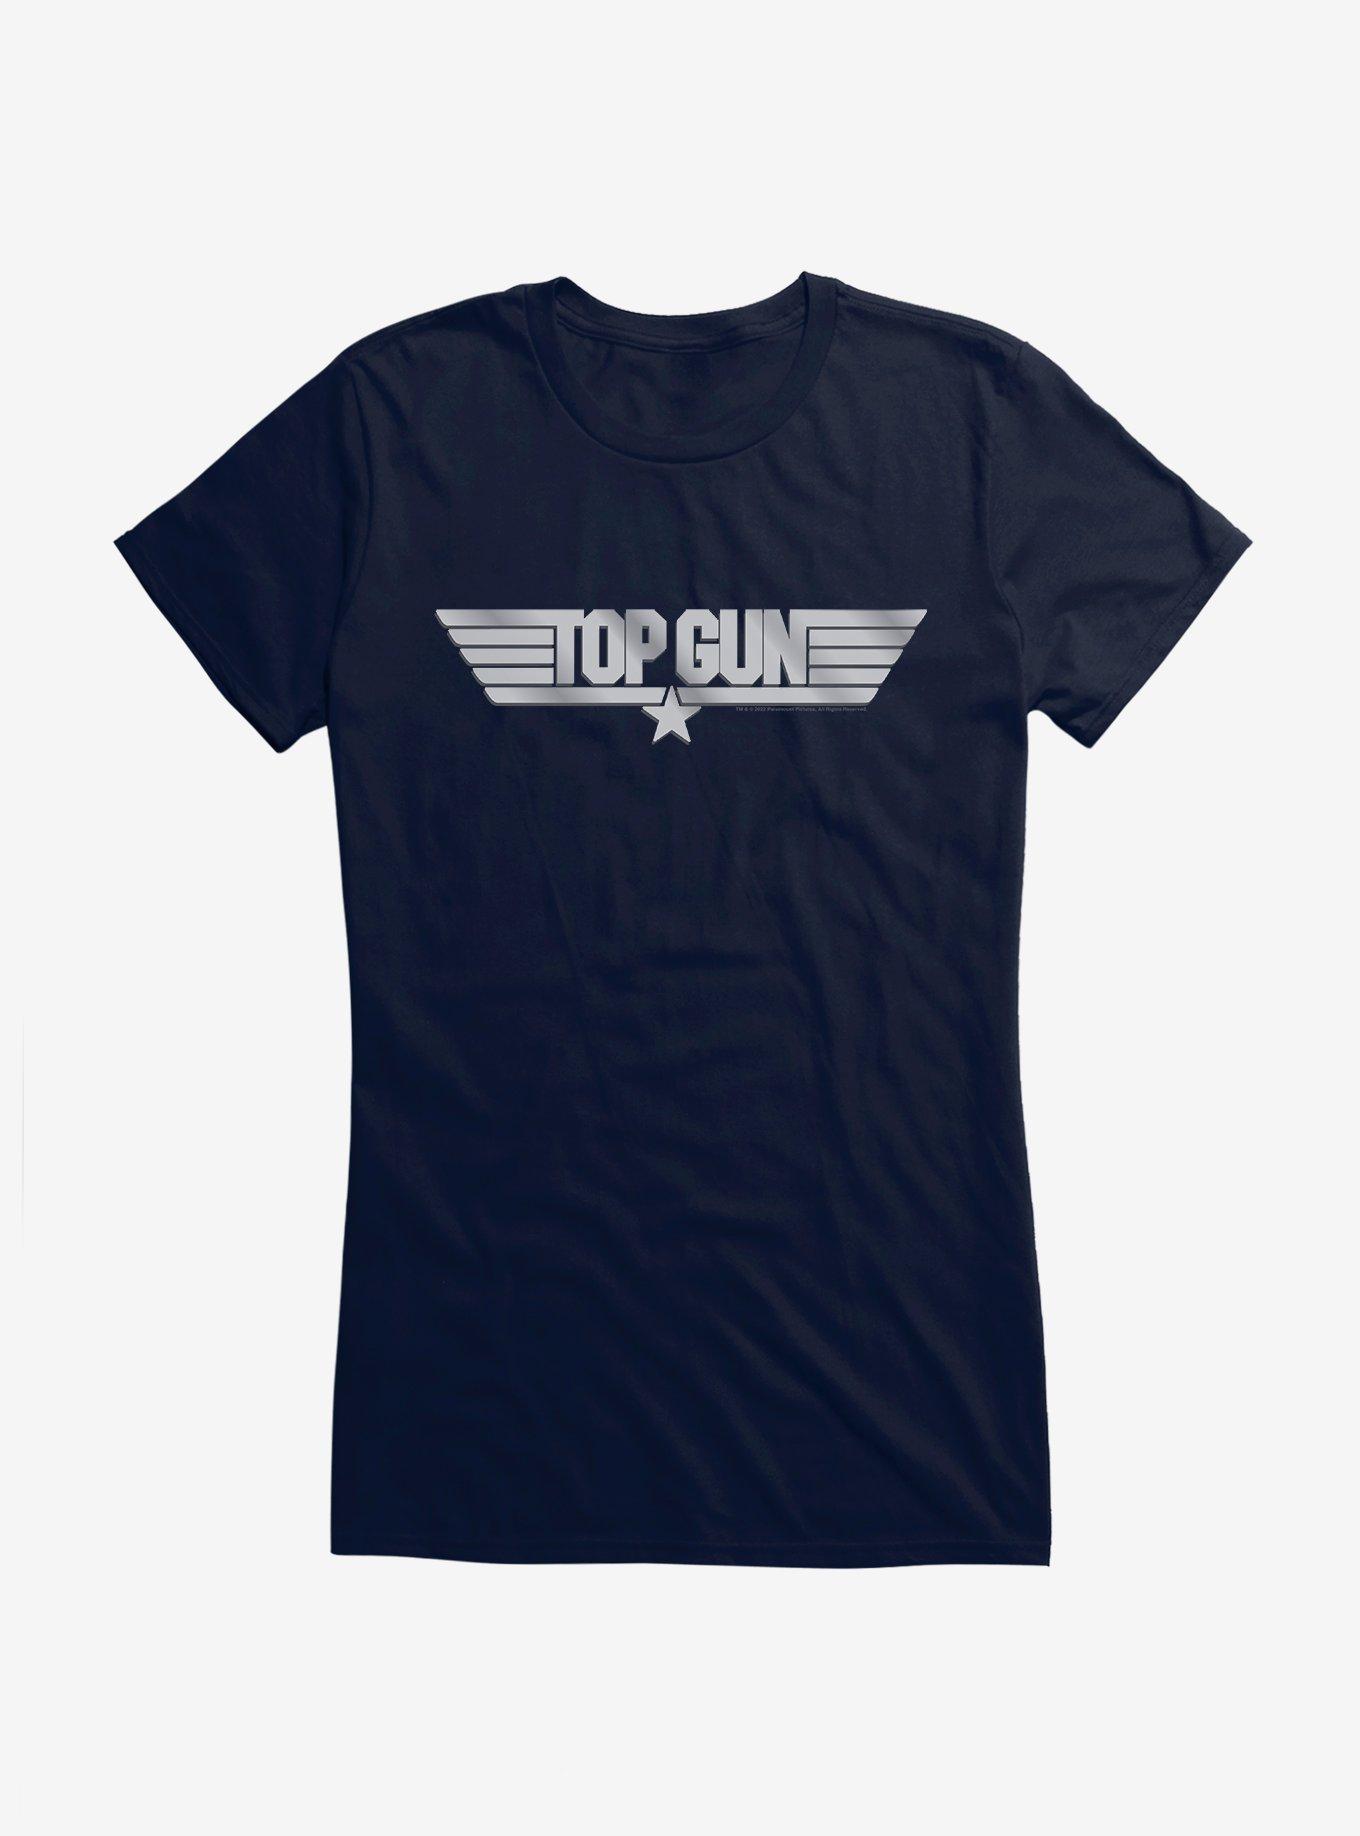 Top Gun Metal Logo Girls T-Shirt